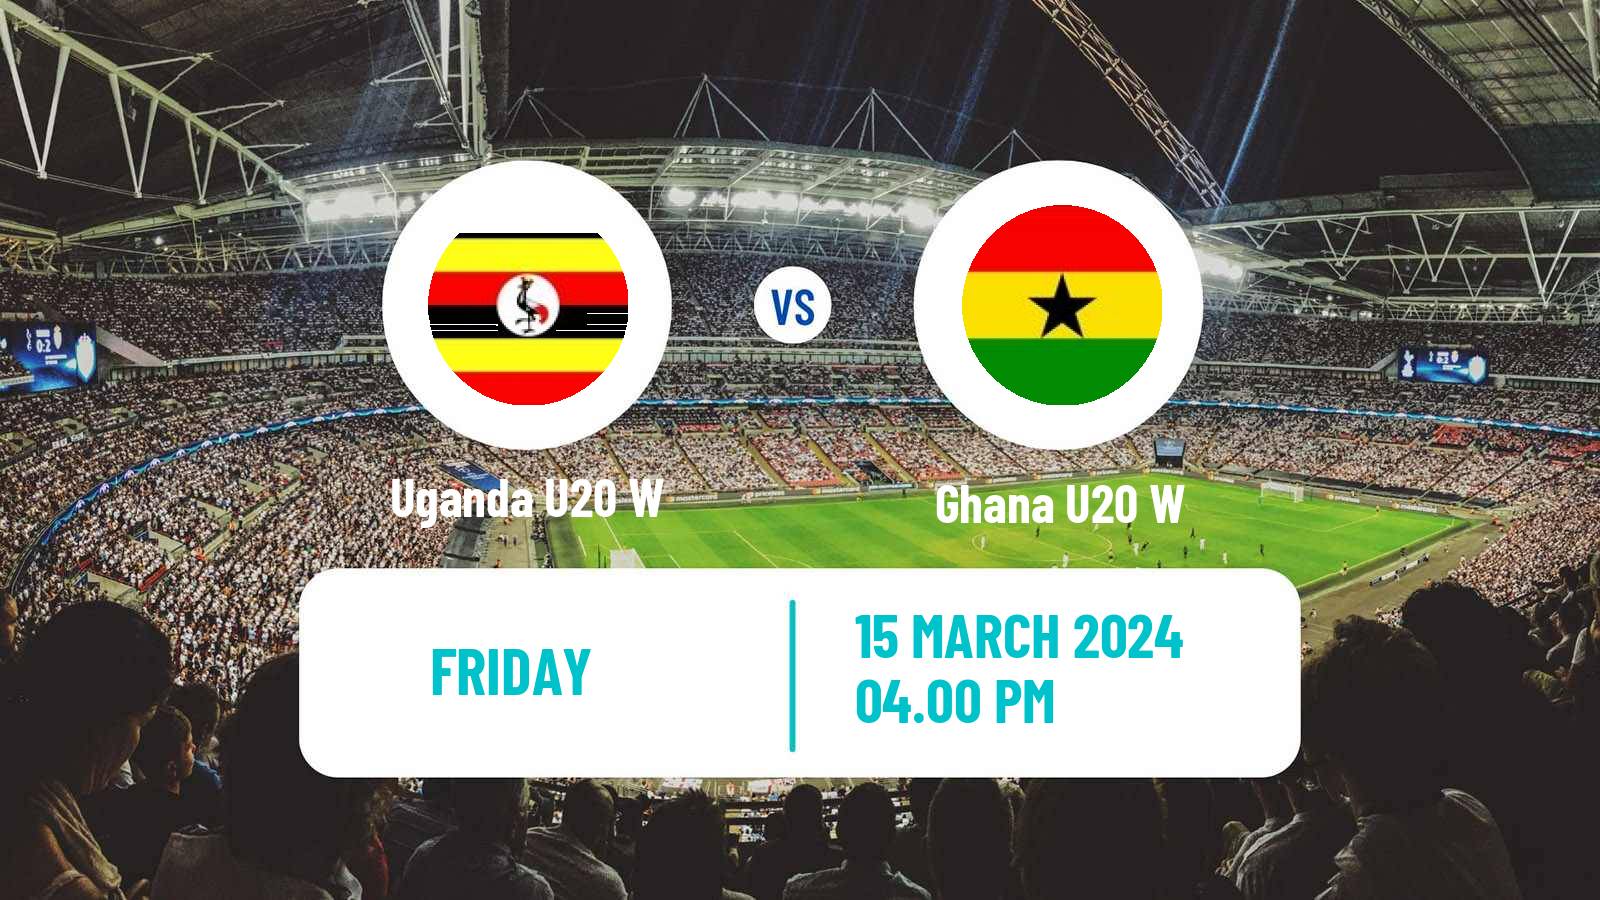 Soccer African Games Football Women Uganda U20 W - Ghana U20 W